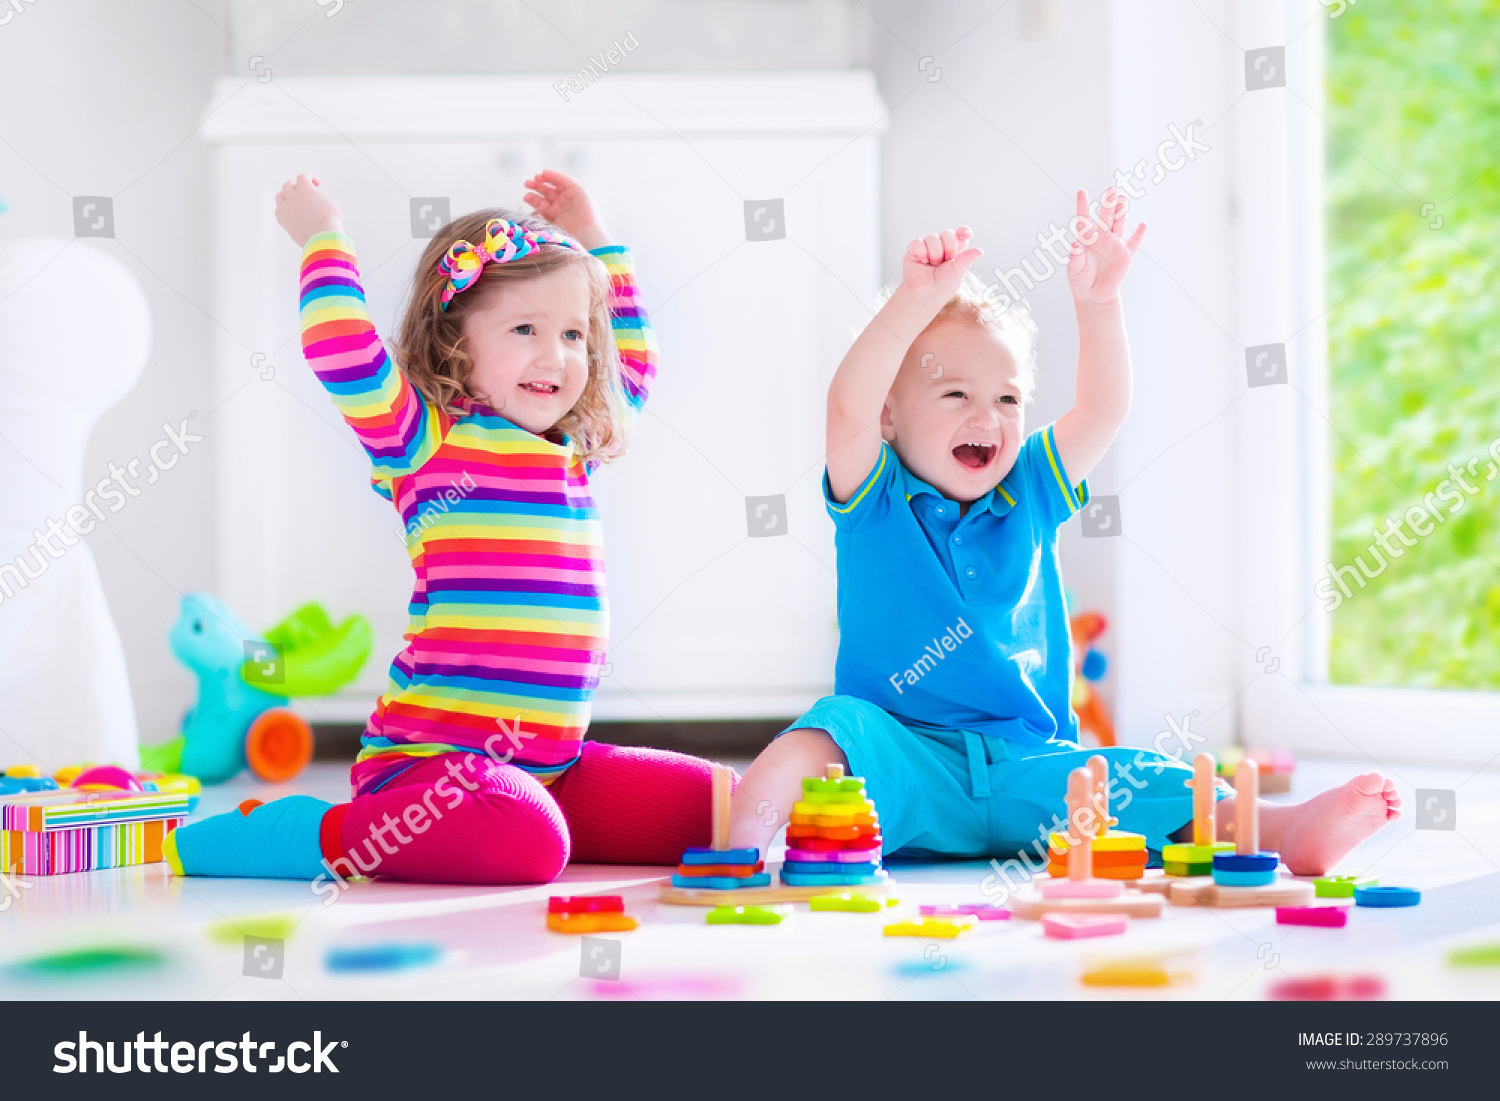 学龄前儿童的孩子玩彩色玩具积木。孩子们玩教